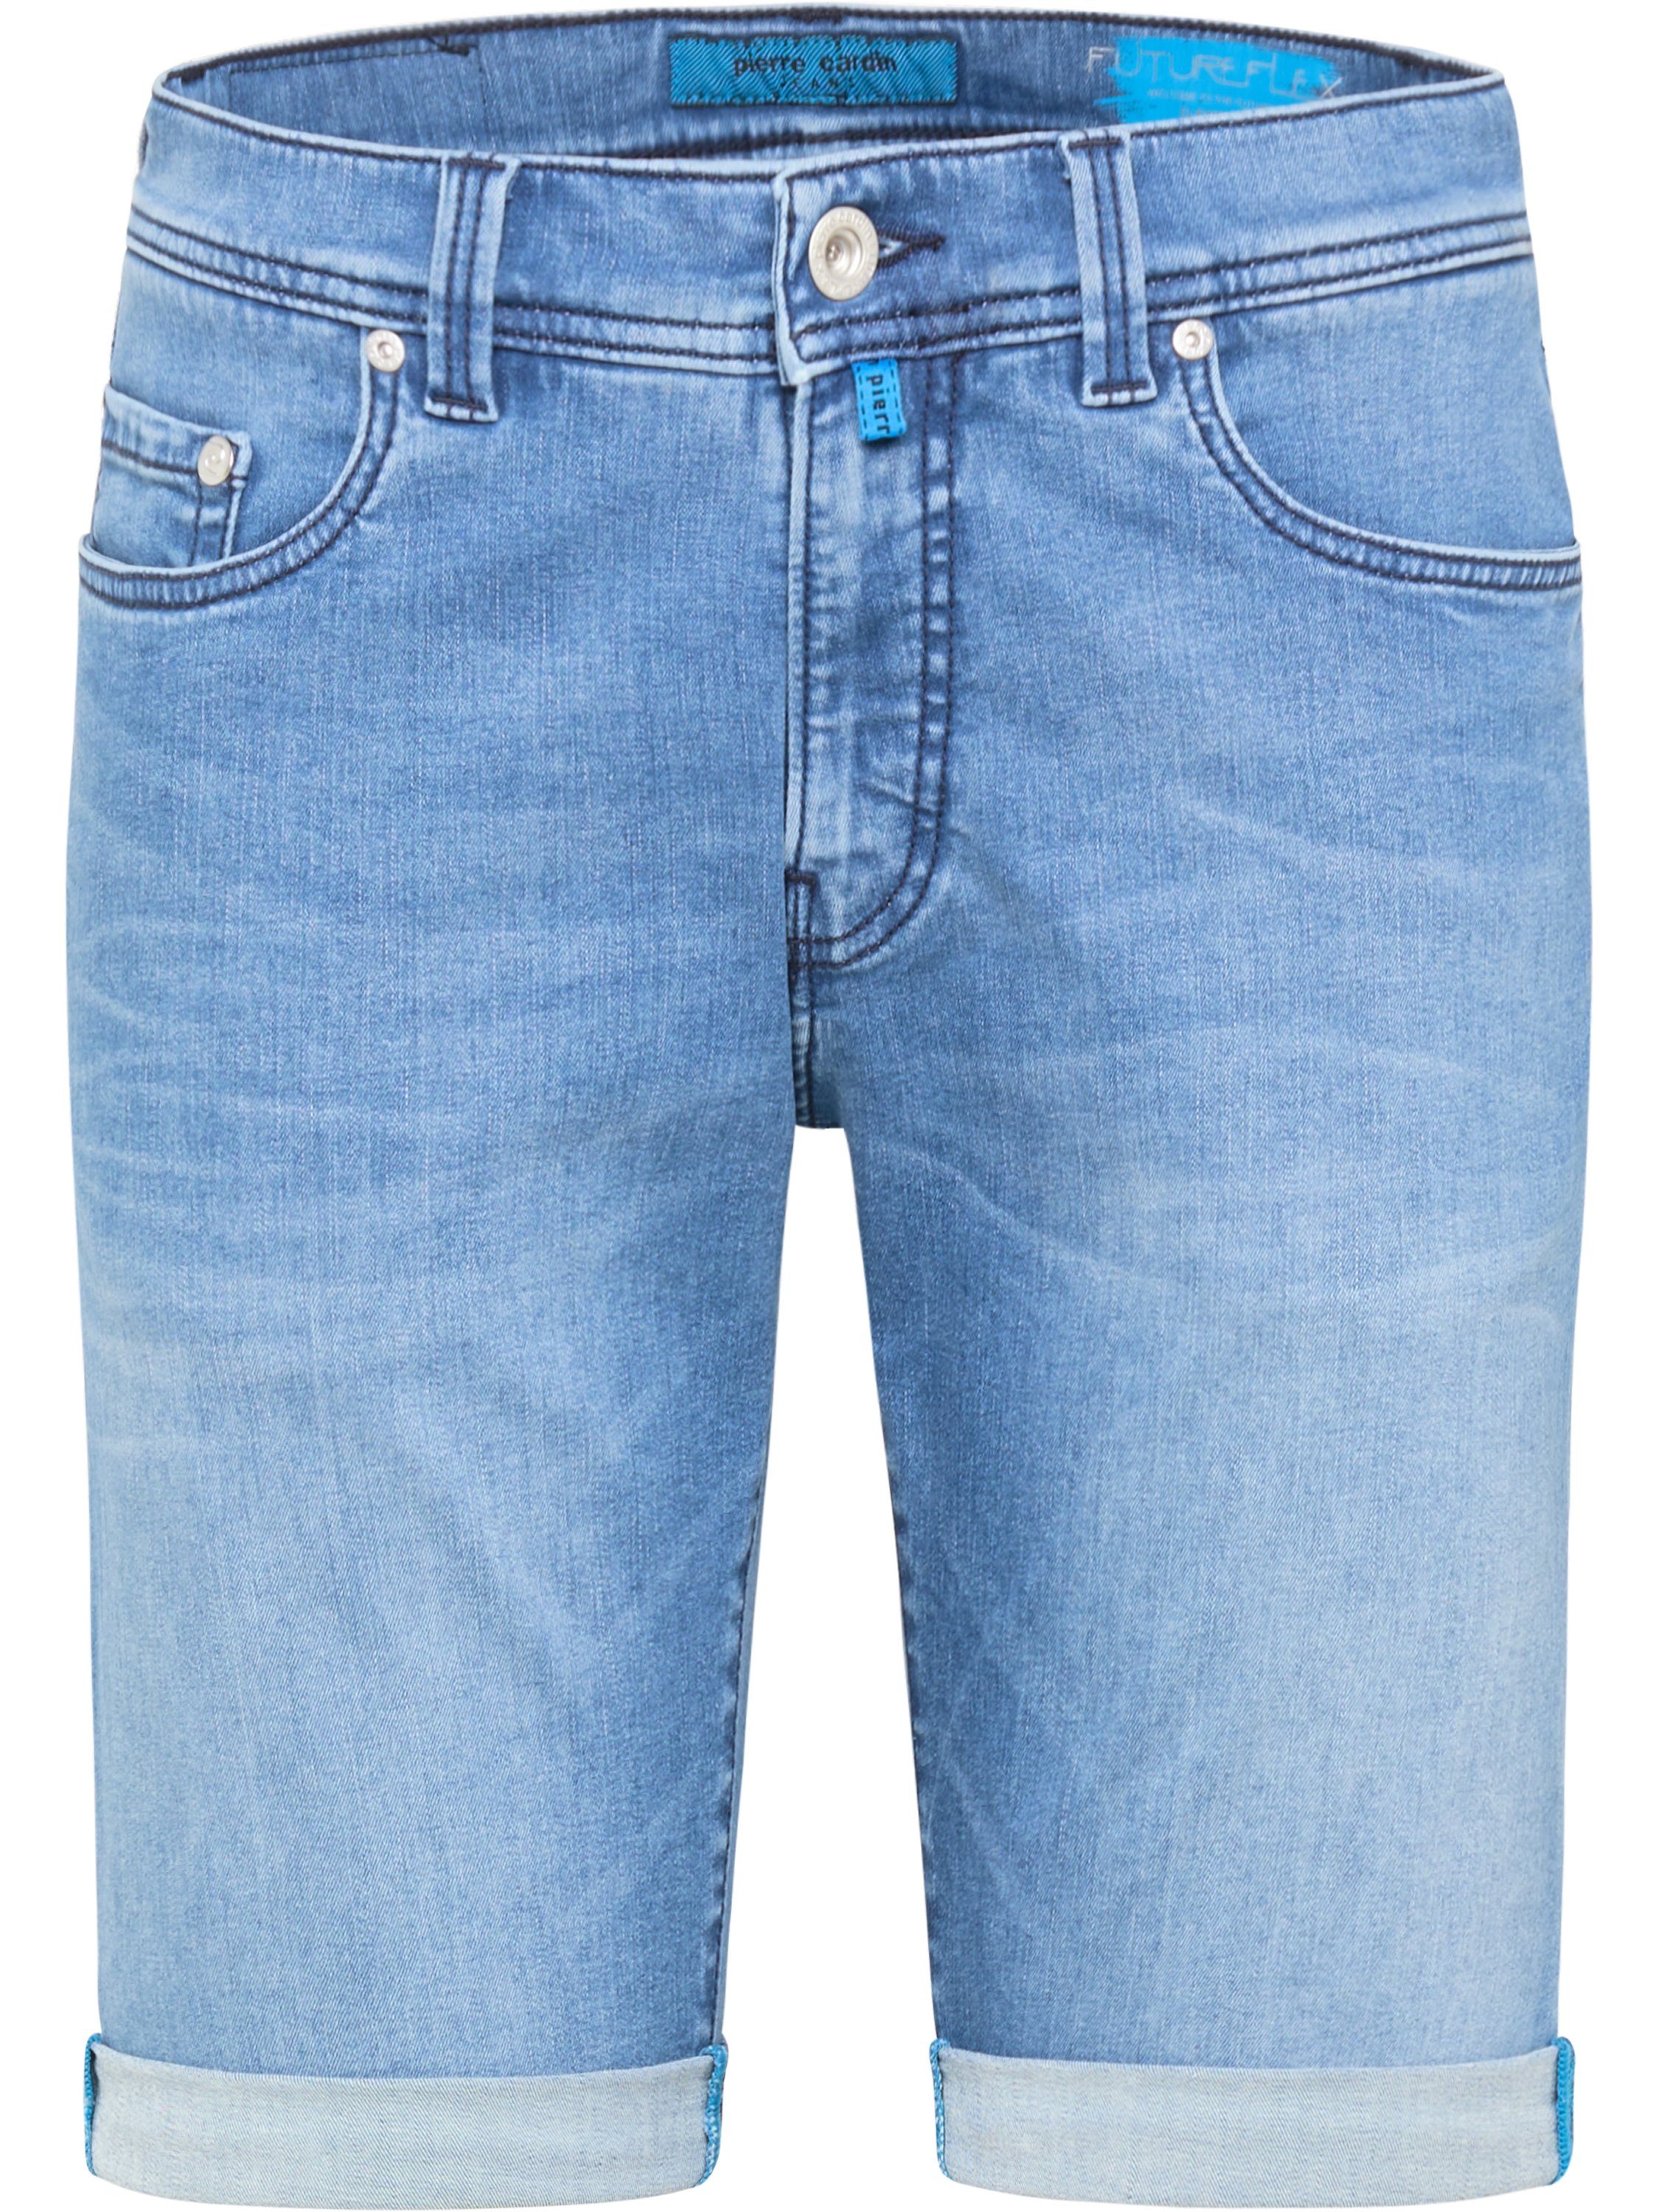 mid Cardin - 8860.06 CARDIN blue Pierre 3852 PIERRE stone LYON SHORTS FUTUREFLEX 5-Pocket-Jeans